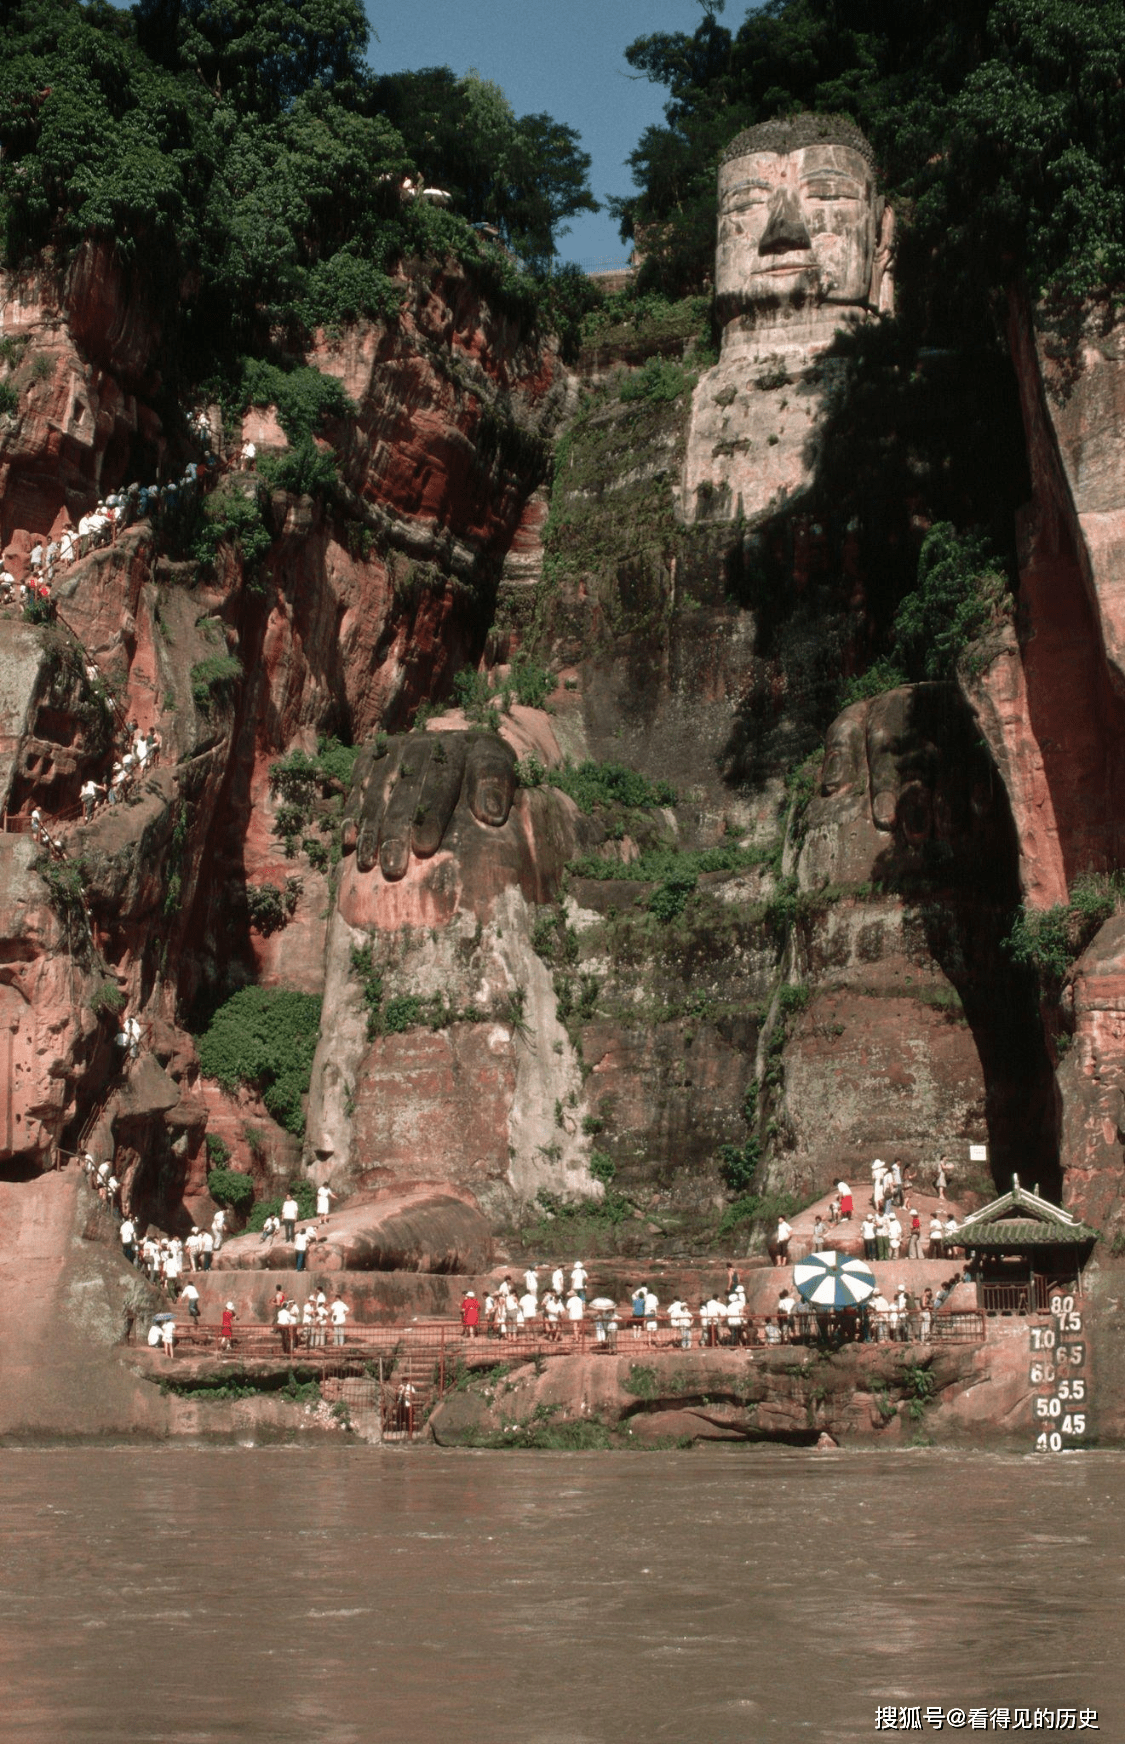 老照片 八十年代的四川乐山大佛 居然不少人爬到了大佛身上